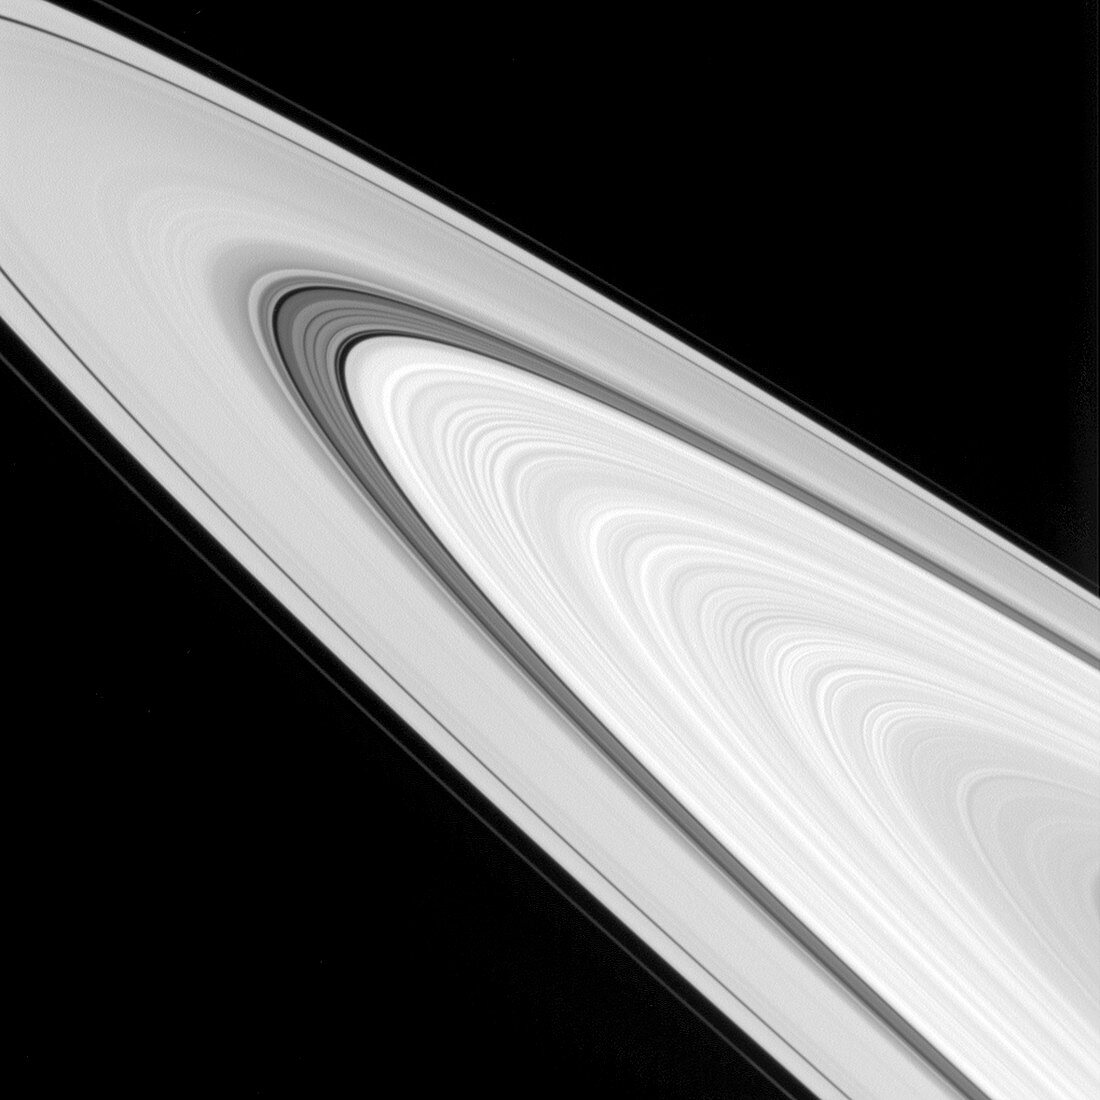 Saturn's rings, Cassini image